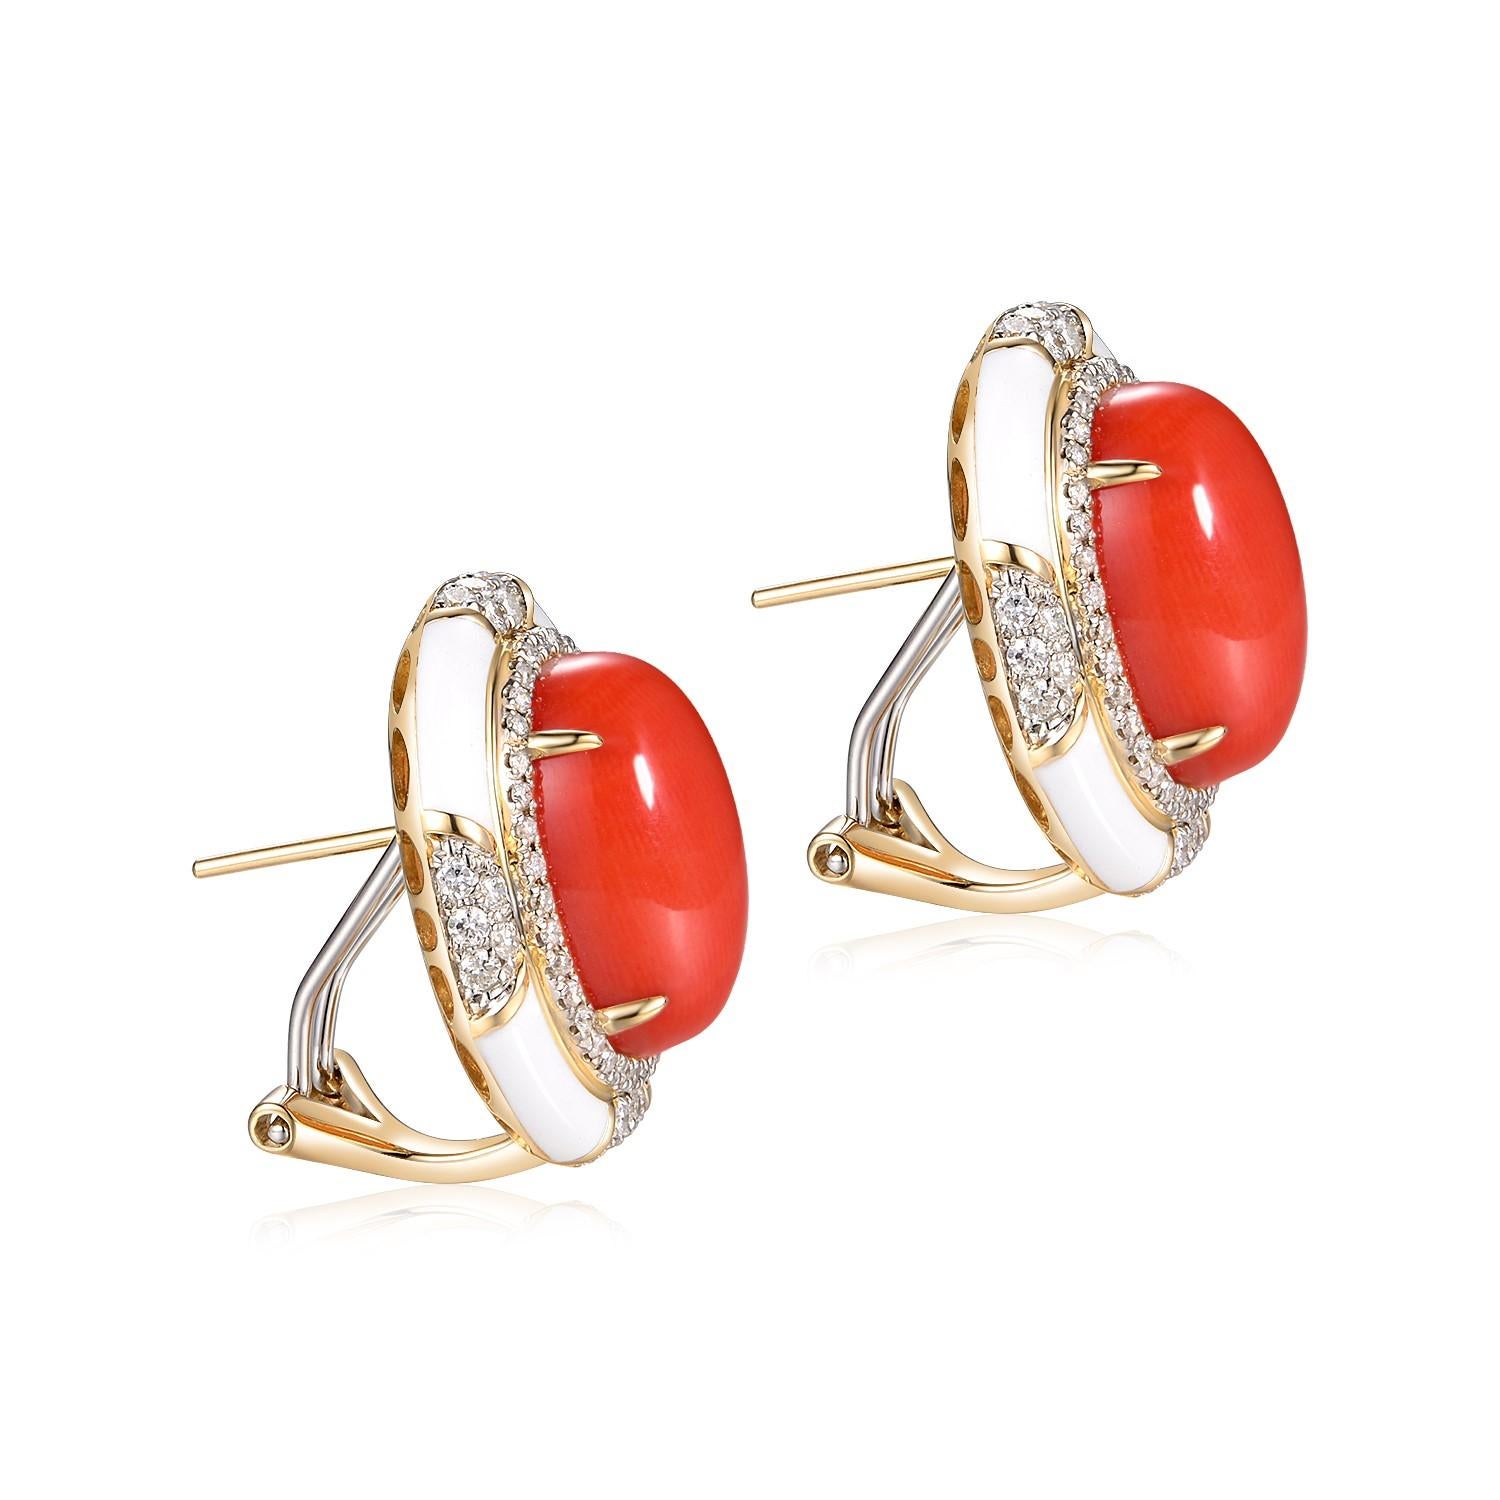 Die lachsfarbenen Korallen-Diamant-Emaille-Ohrringe, gefasst in 14 Karat Gelbgold, sind ein exquisites Zeugnis zeitloser Eleganz und Handwerkskunst. Im Mittelpunkt jedes Ohrrings steht der leuchtende Korallenstein mit einem Gewicht von